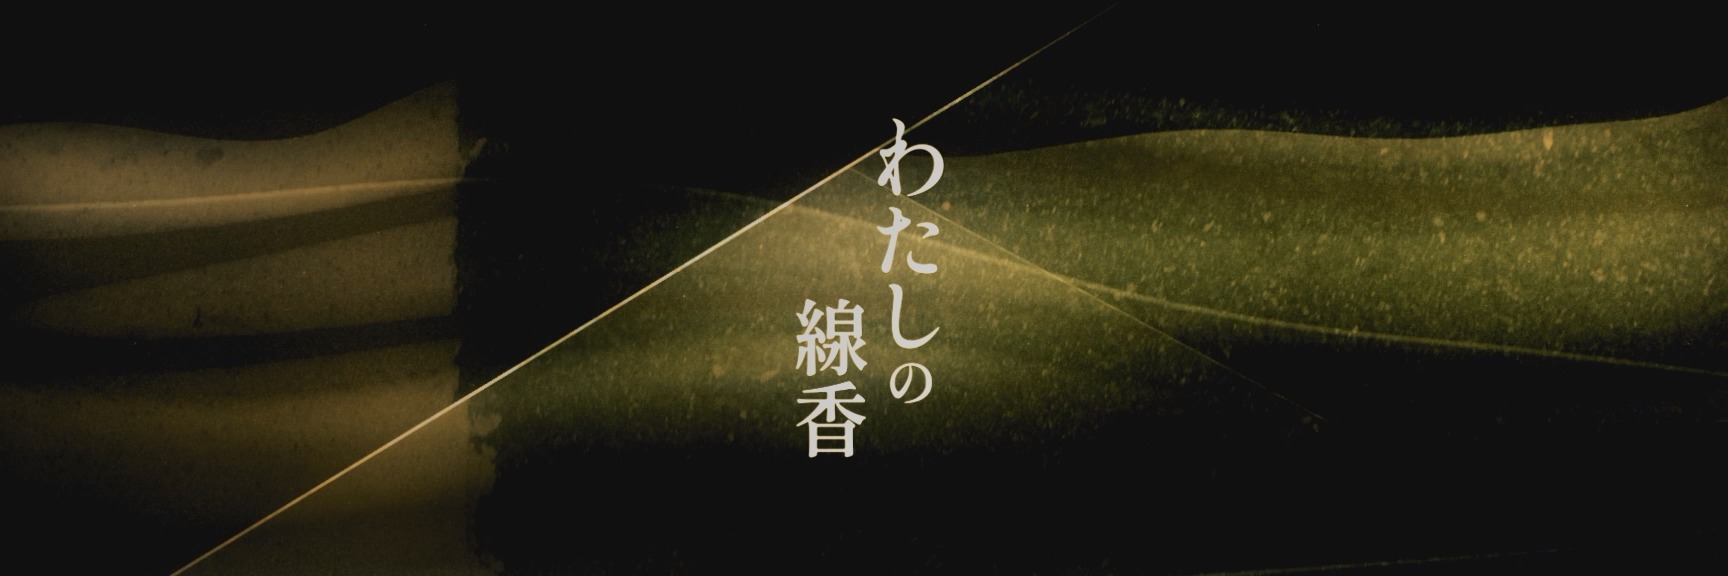 花譜3rd ONE-MAN LIVE「不可解参(狂)」 わたしの線香 (モーショングラフィックス)